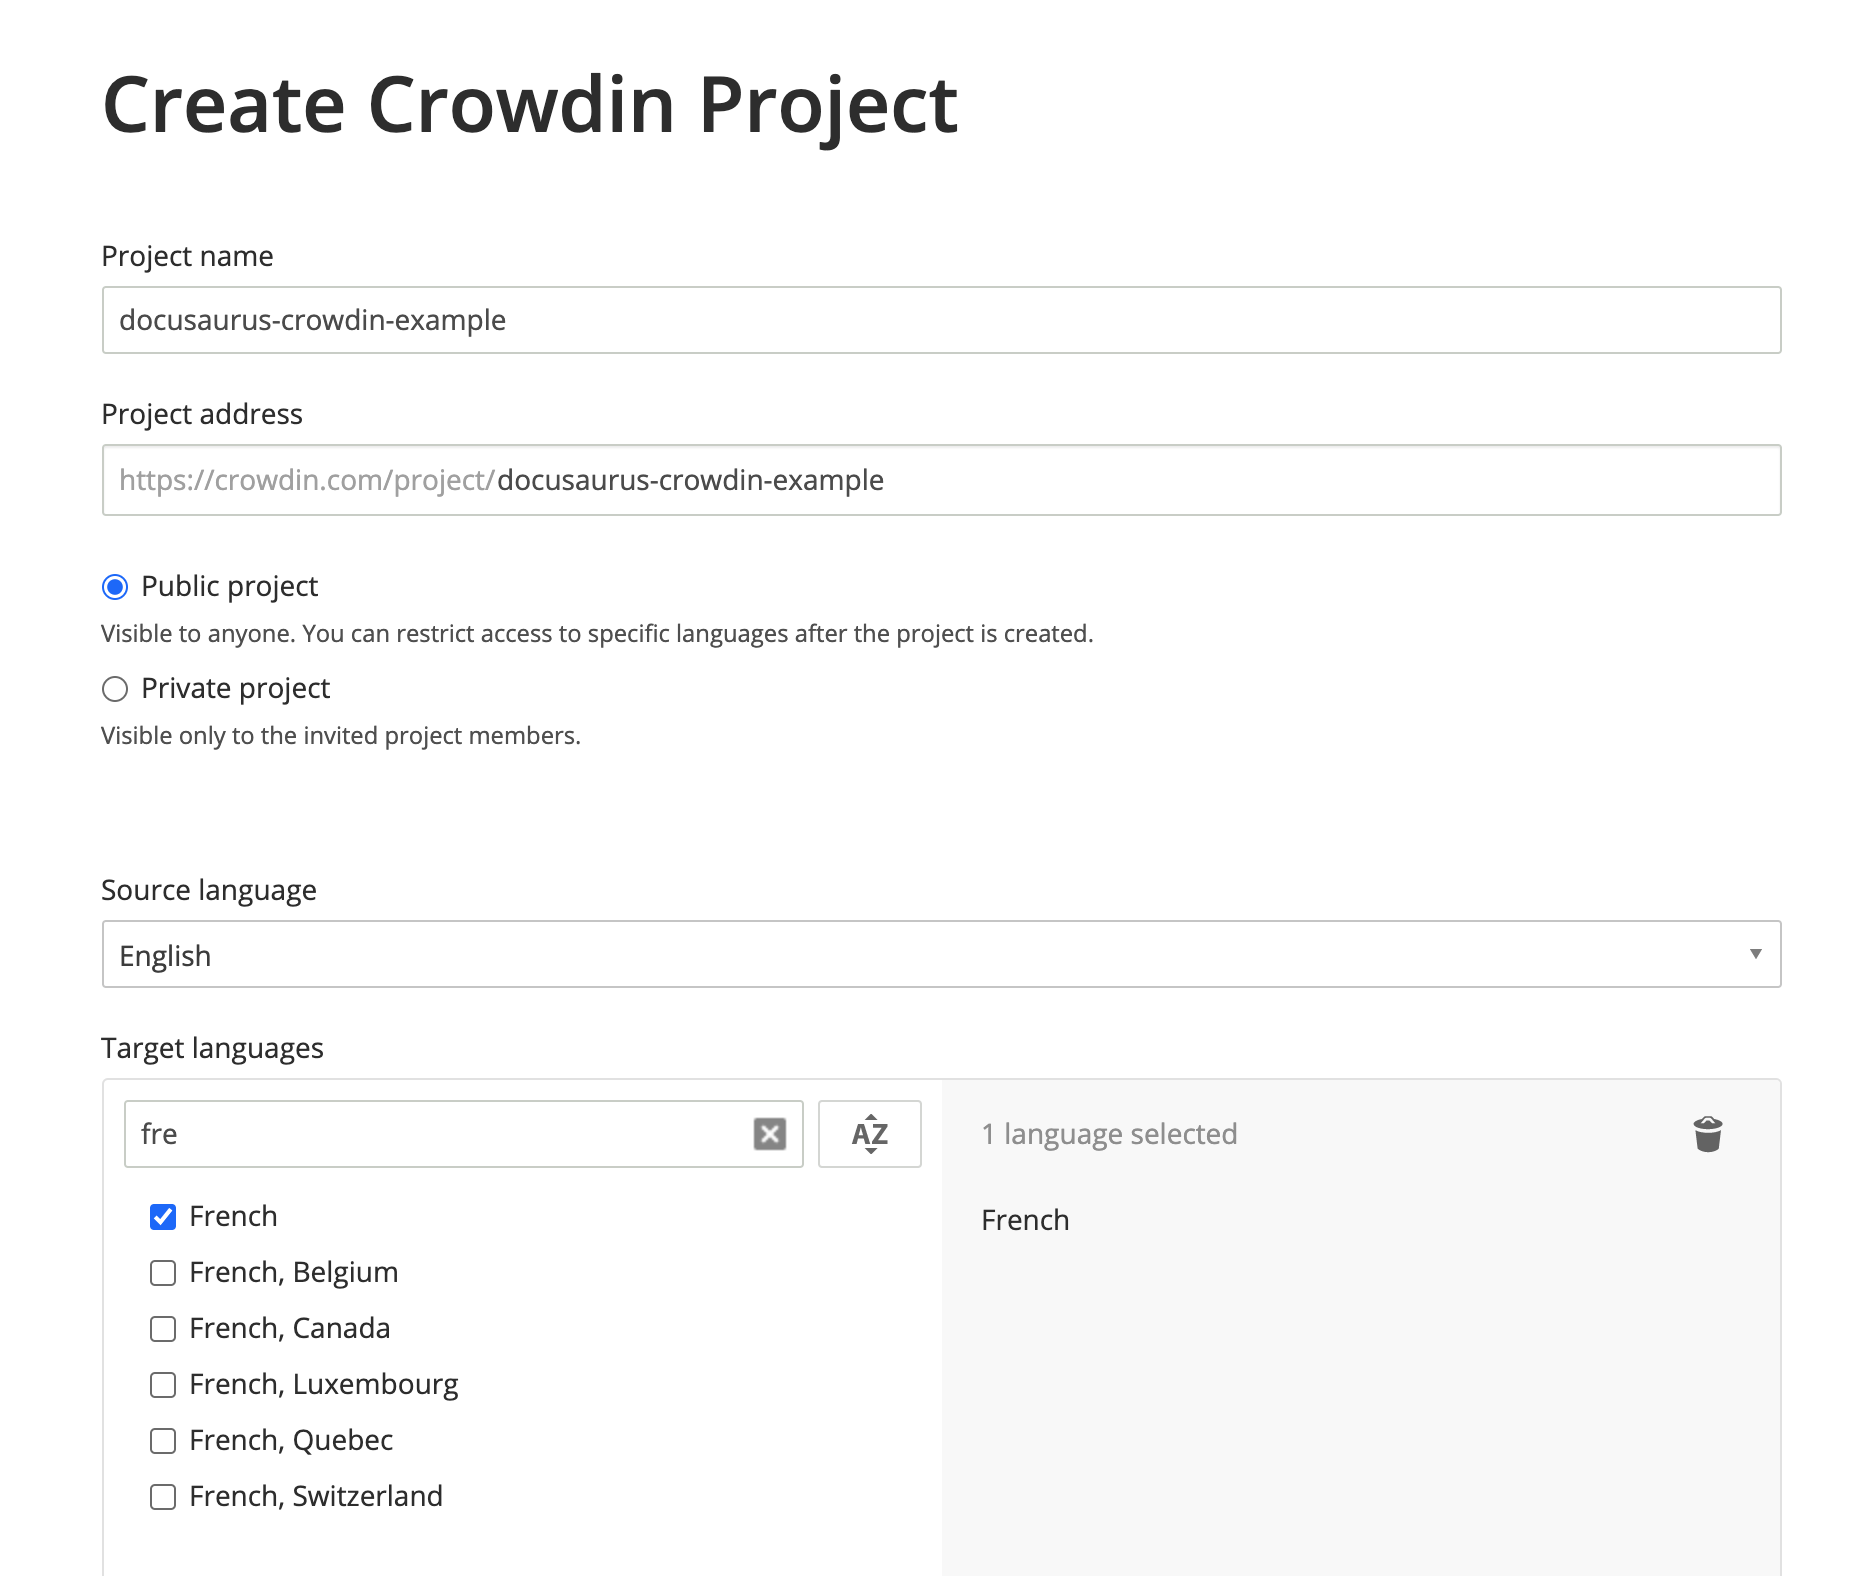 创建 Crowdin 项目，使用英语作为源语言，简体中文作为目标语言